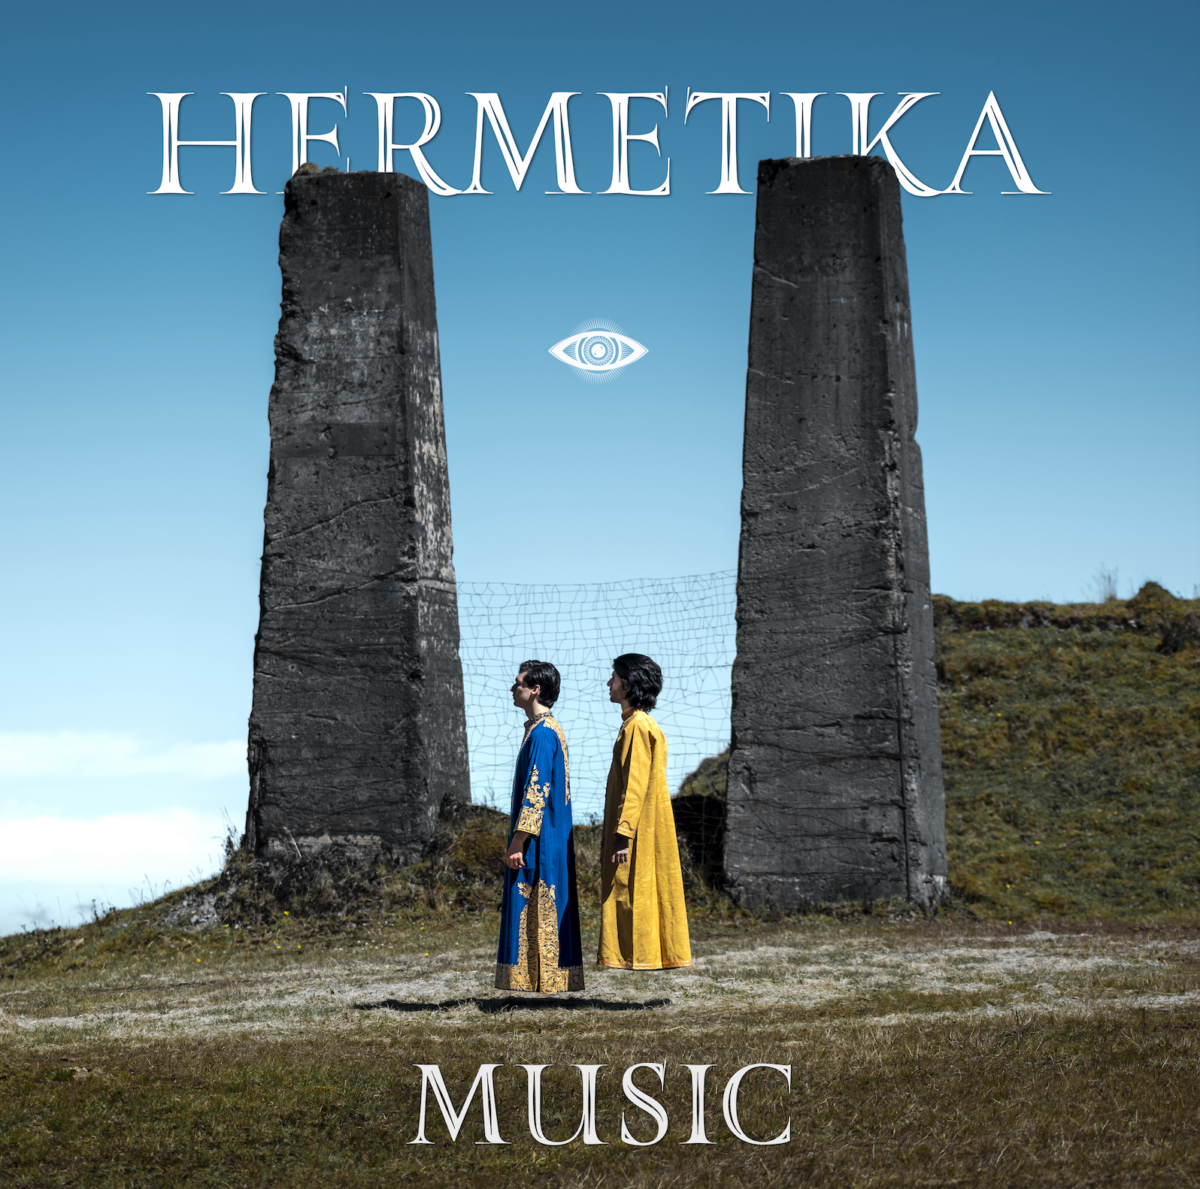 hermetika music debuta con sea 1